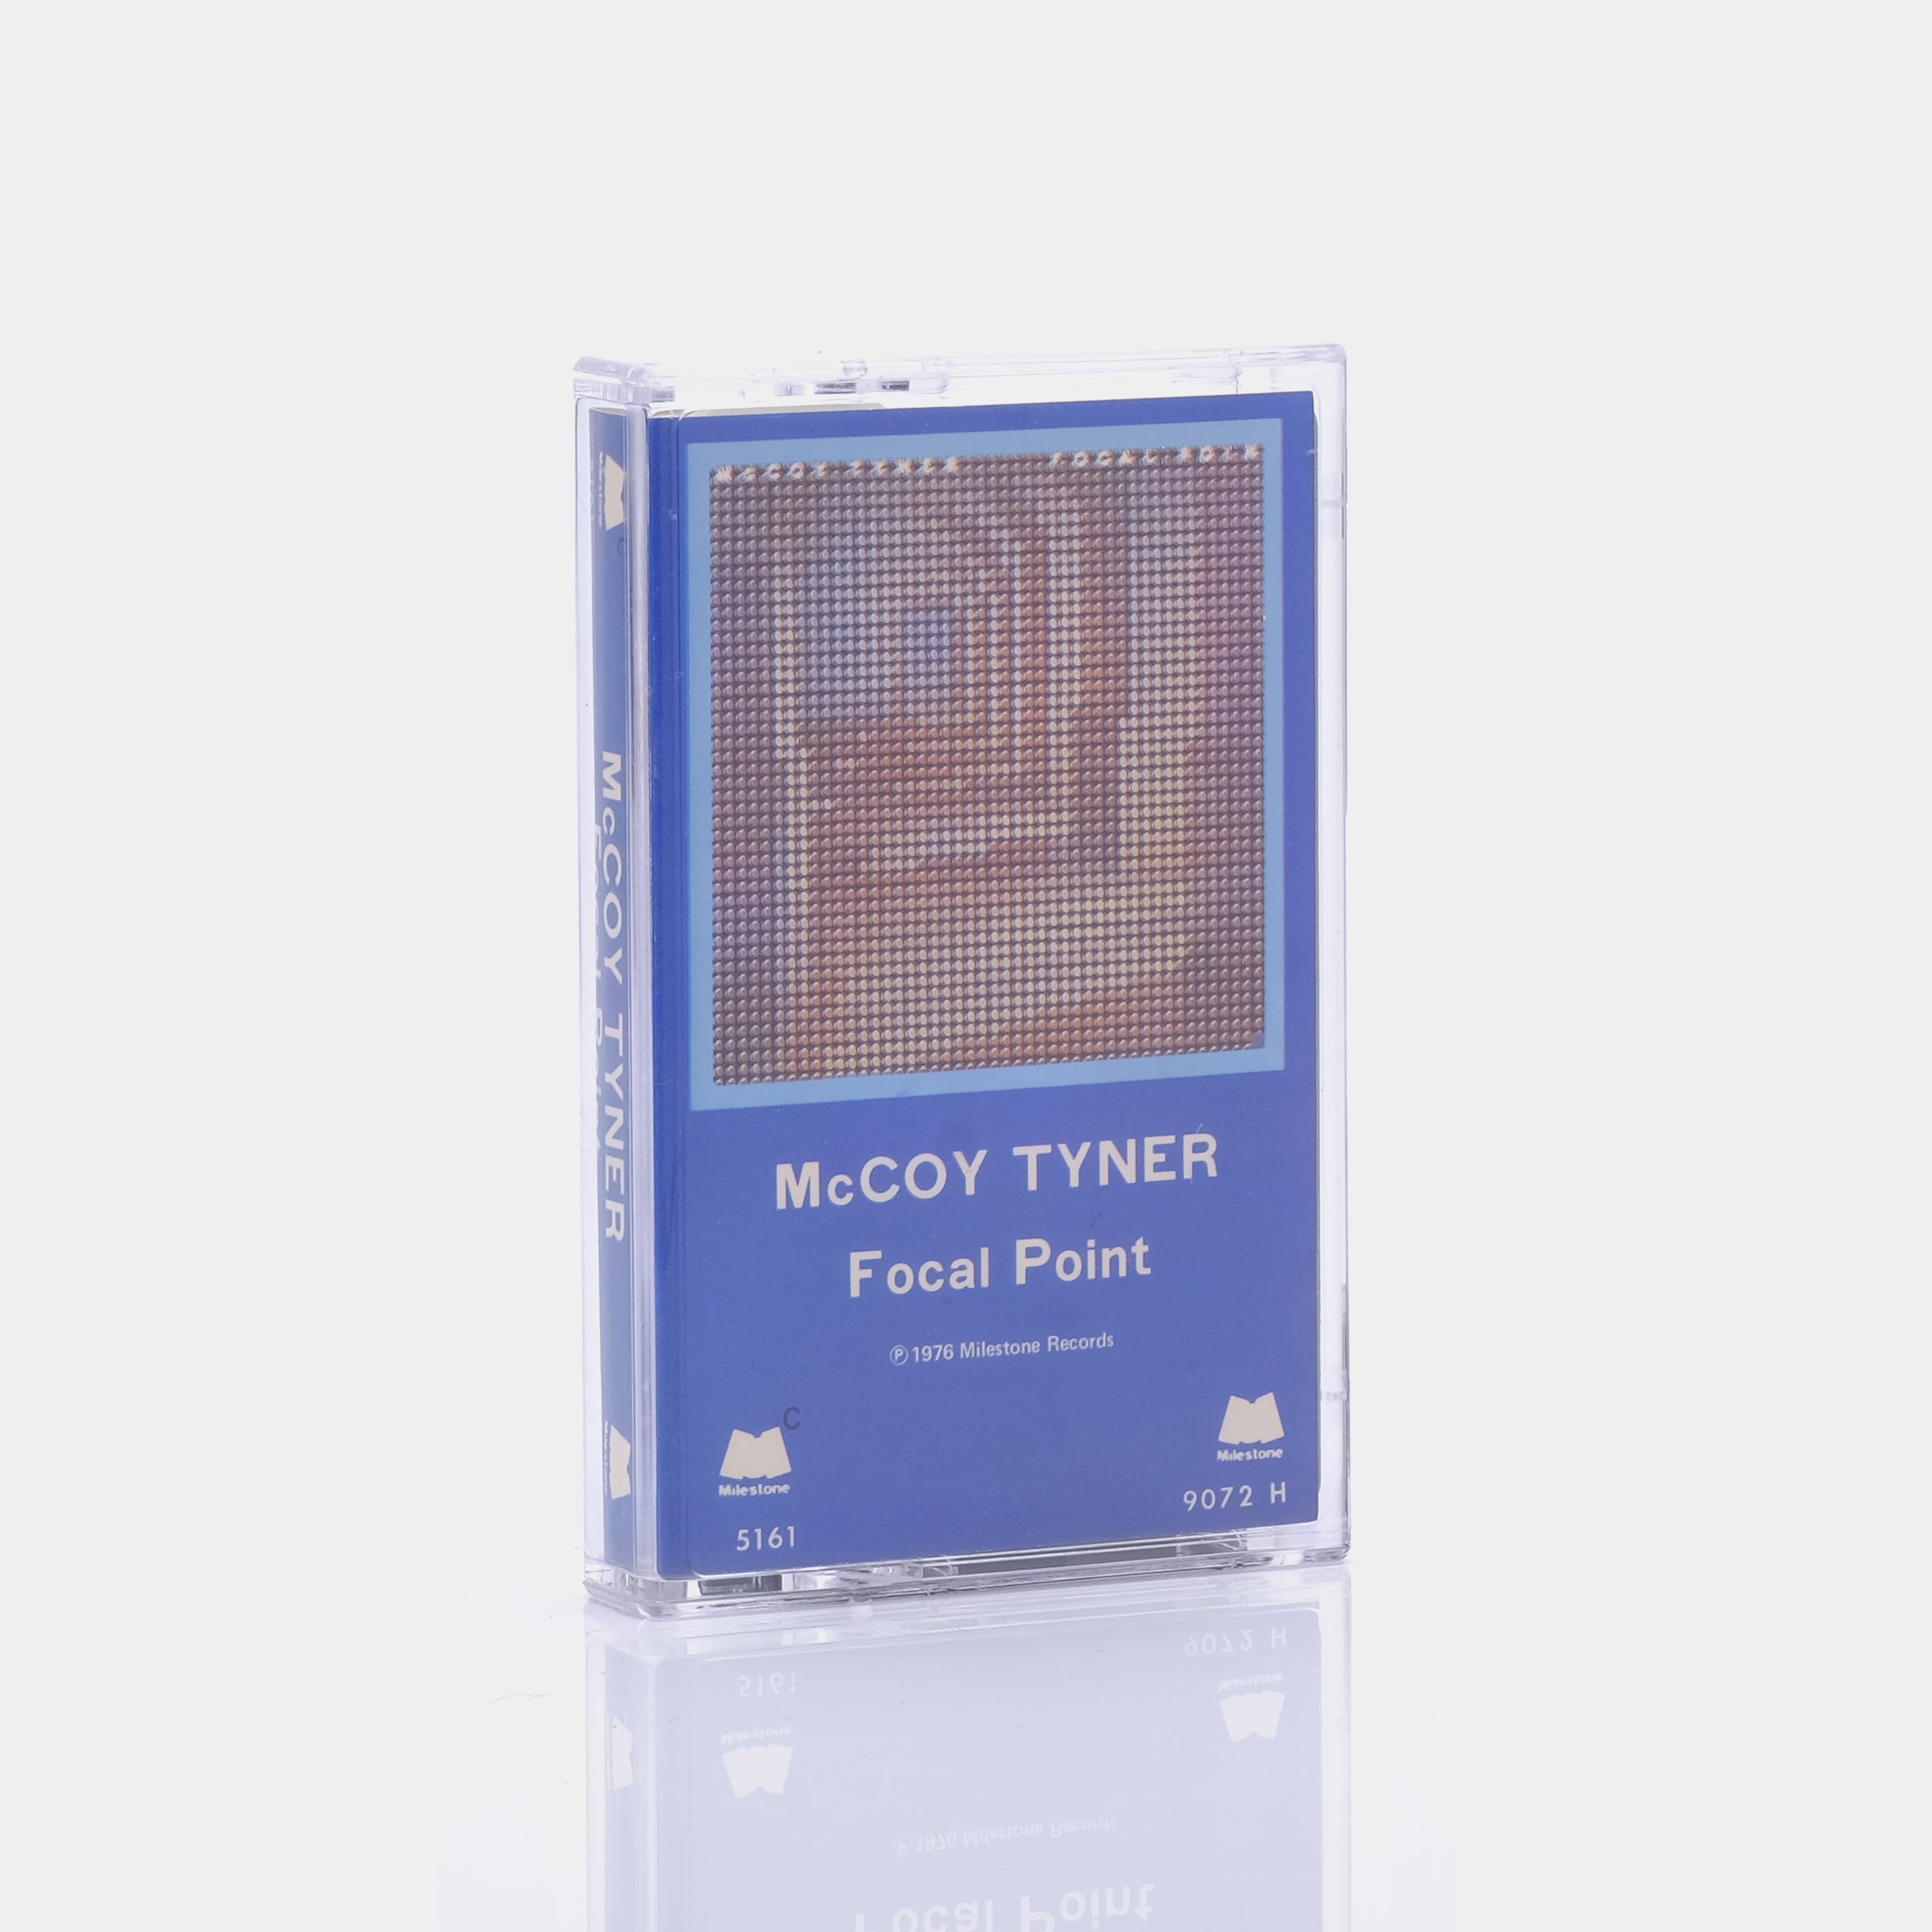 McCoy Tyner - Focal Point Cassette Tape